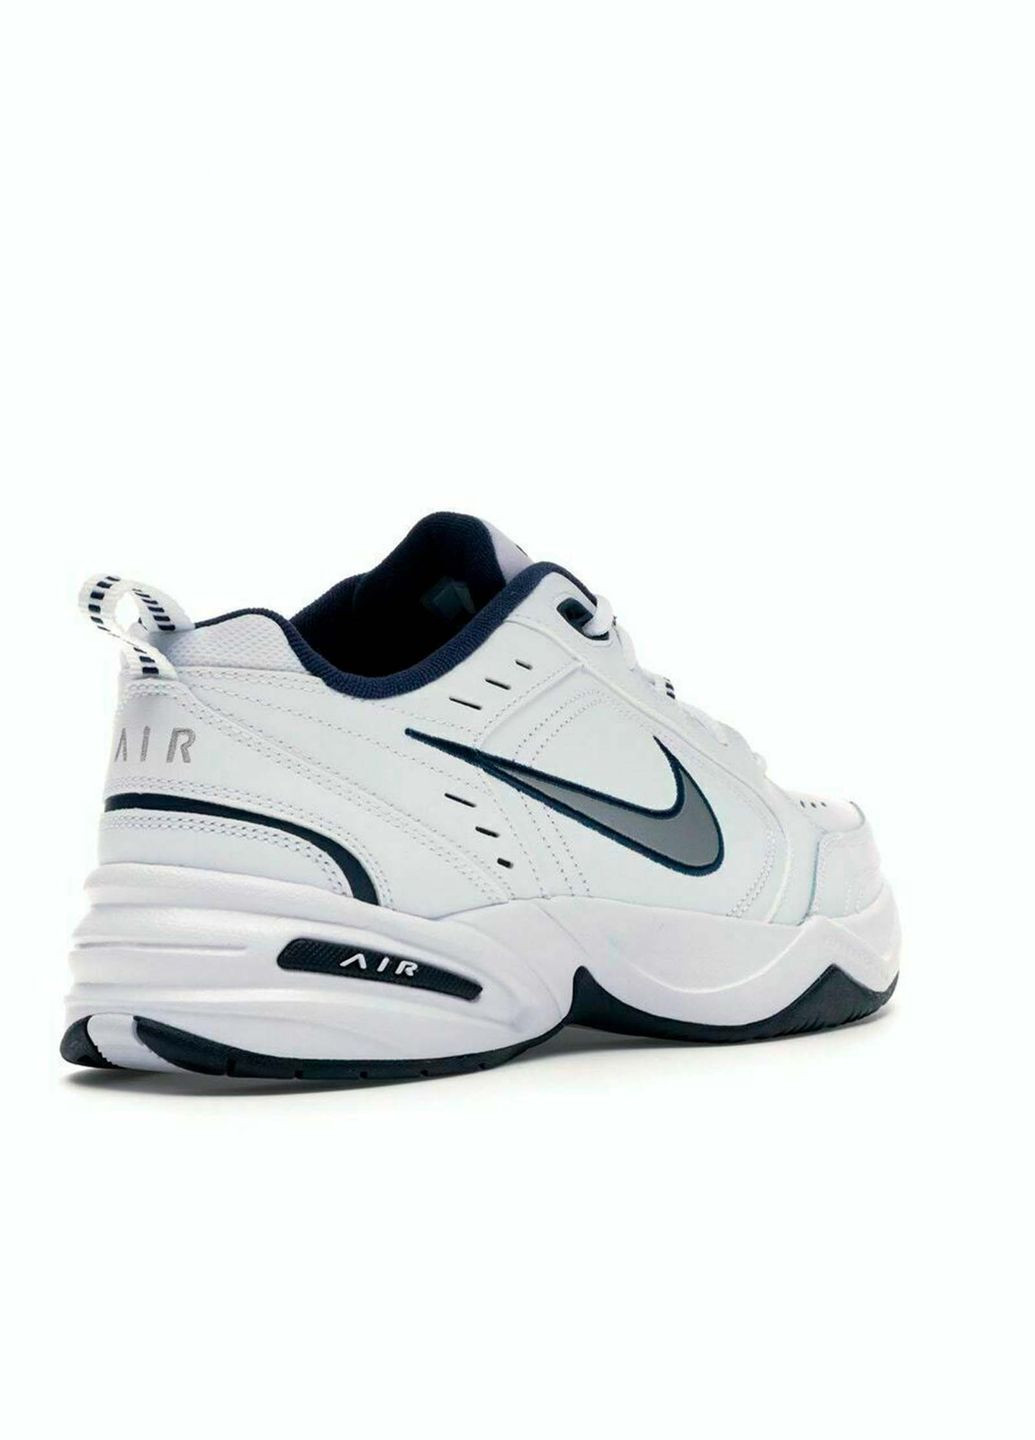 Белые всесезонные мужские кроссовки air monarch iv 4e 416355-102 весна-осень кожа текстиль белые на широкую ногу Nike